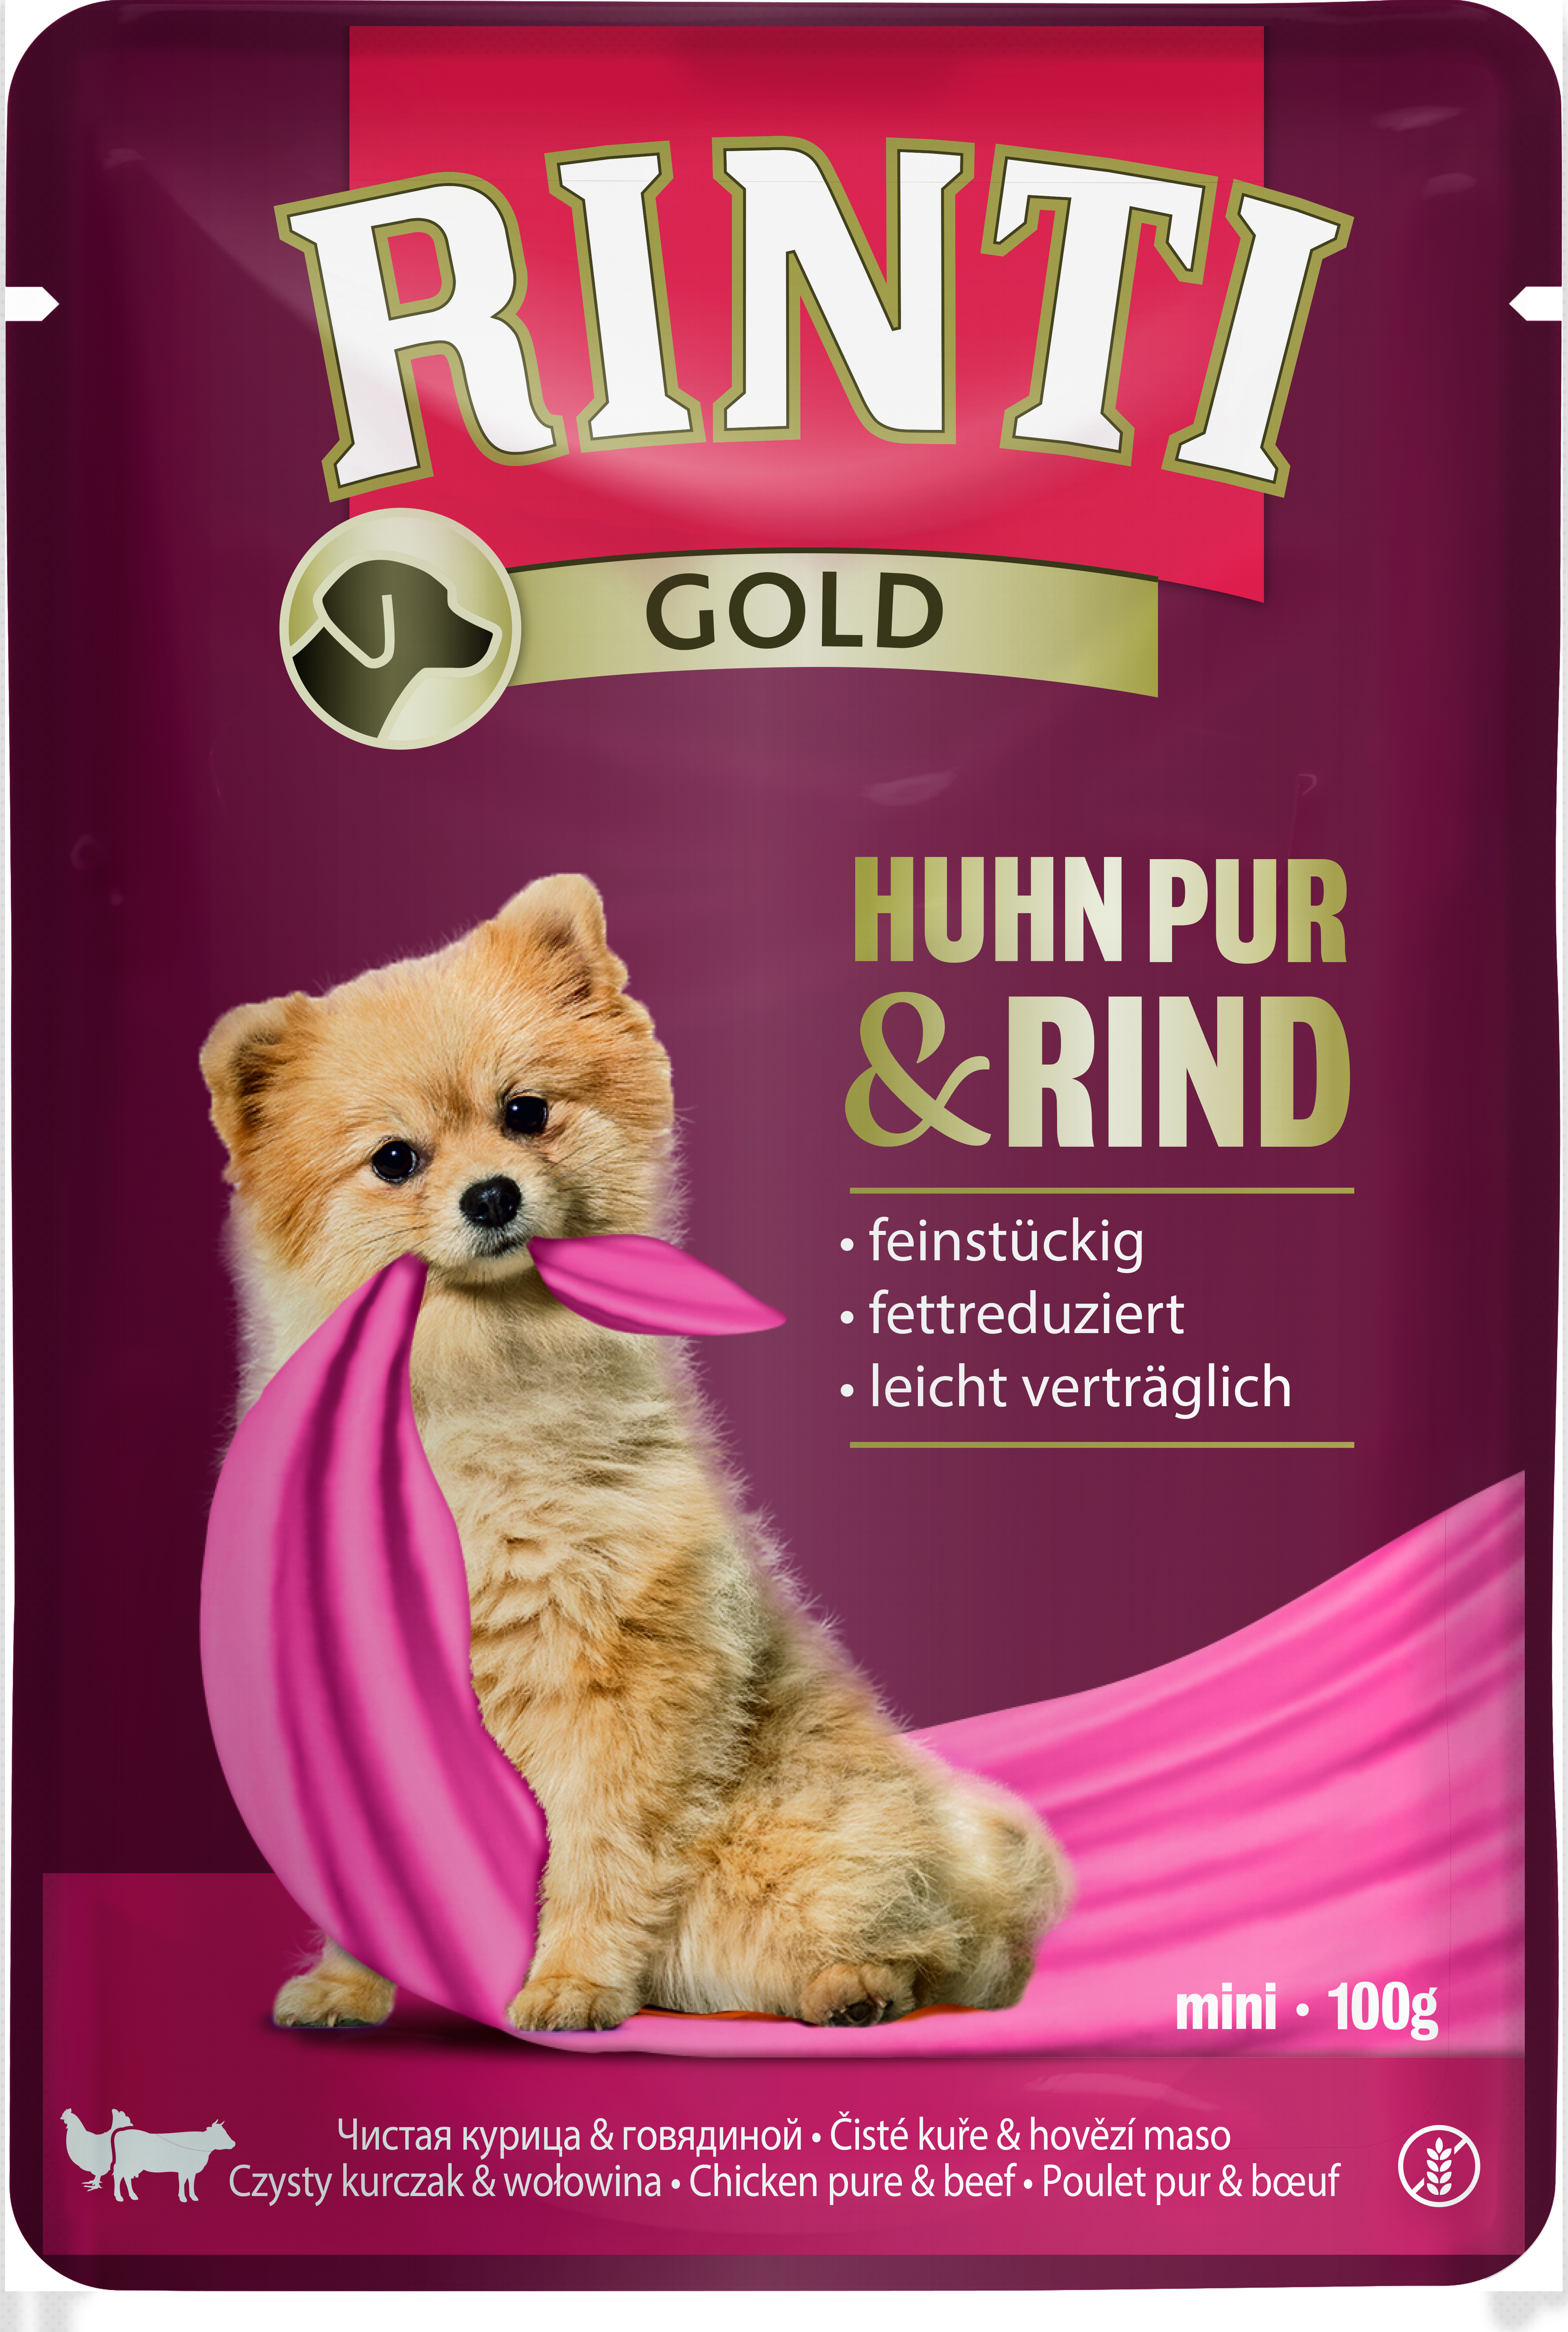 Rinti Gold Huhn Pur & Rind 100g Pouchbeutel